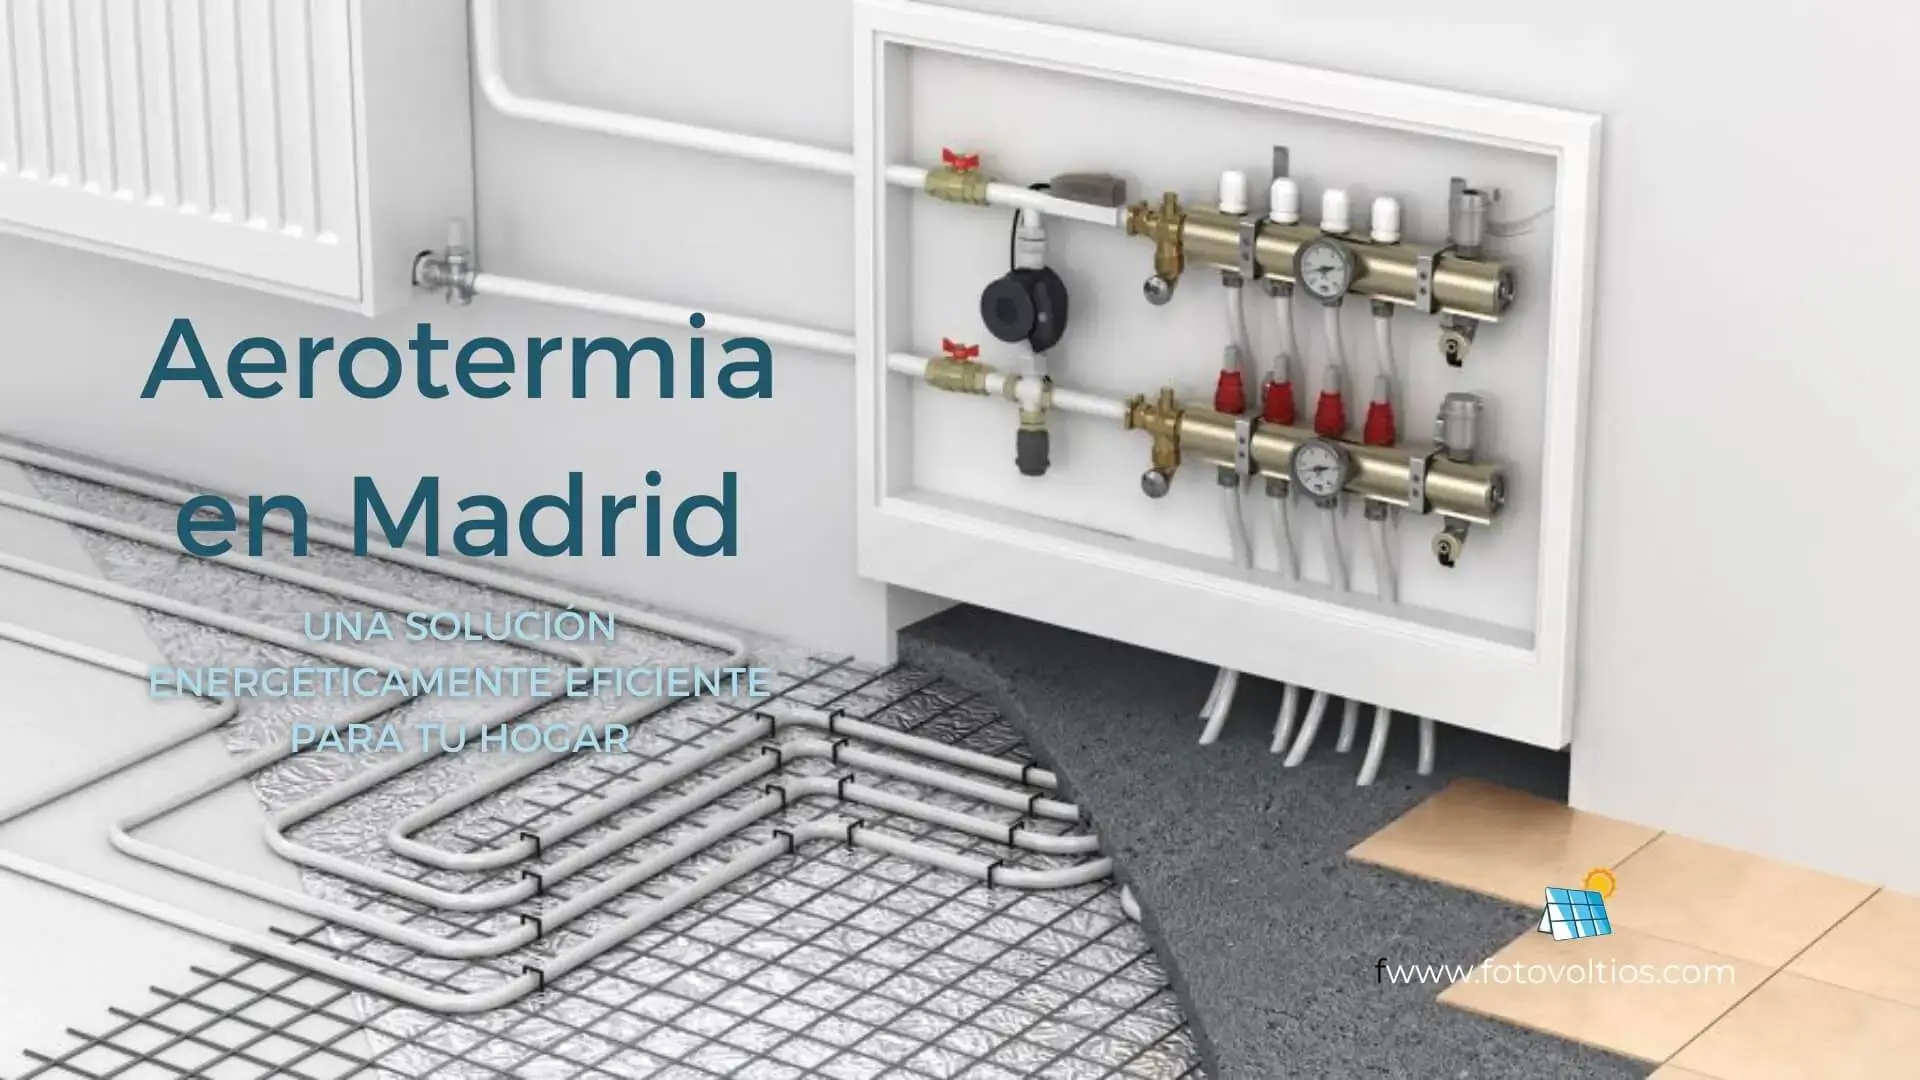 Aerotermia en Madrid guía completa